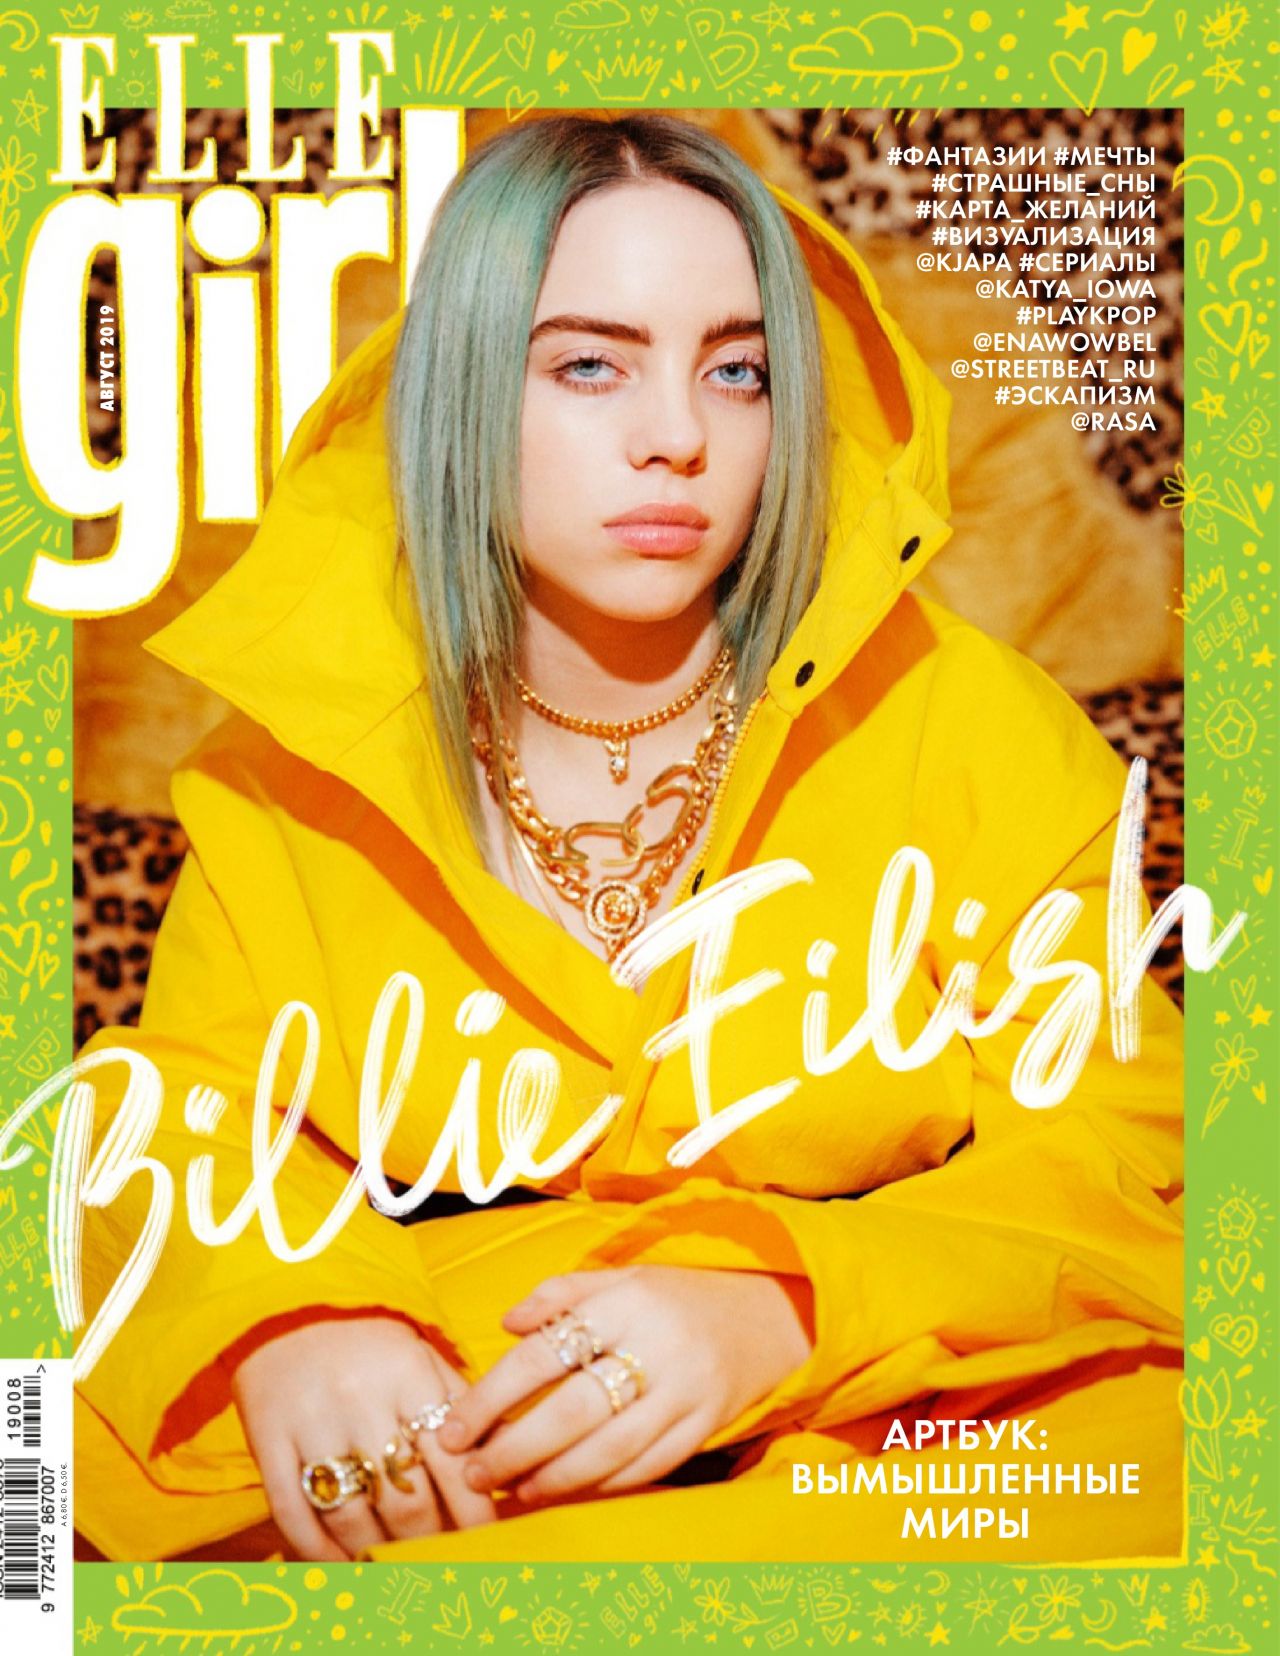 Billie Eilish Magazine